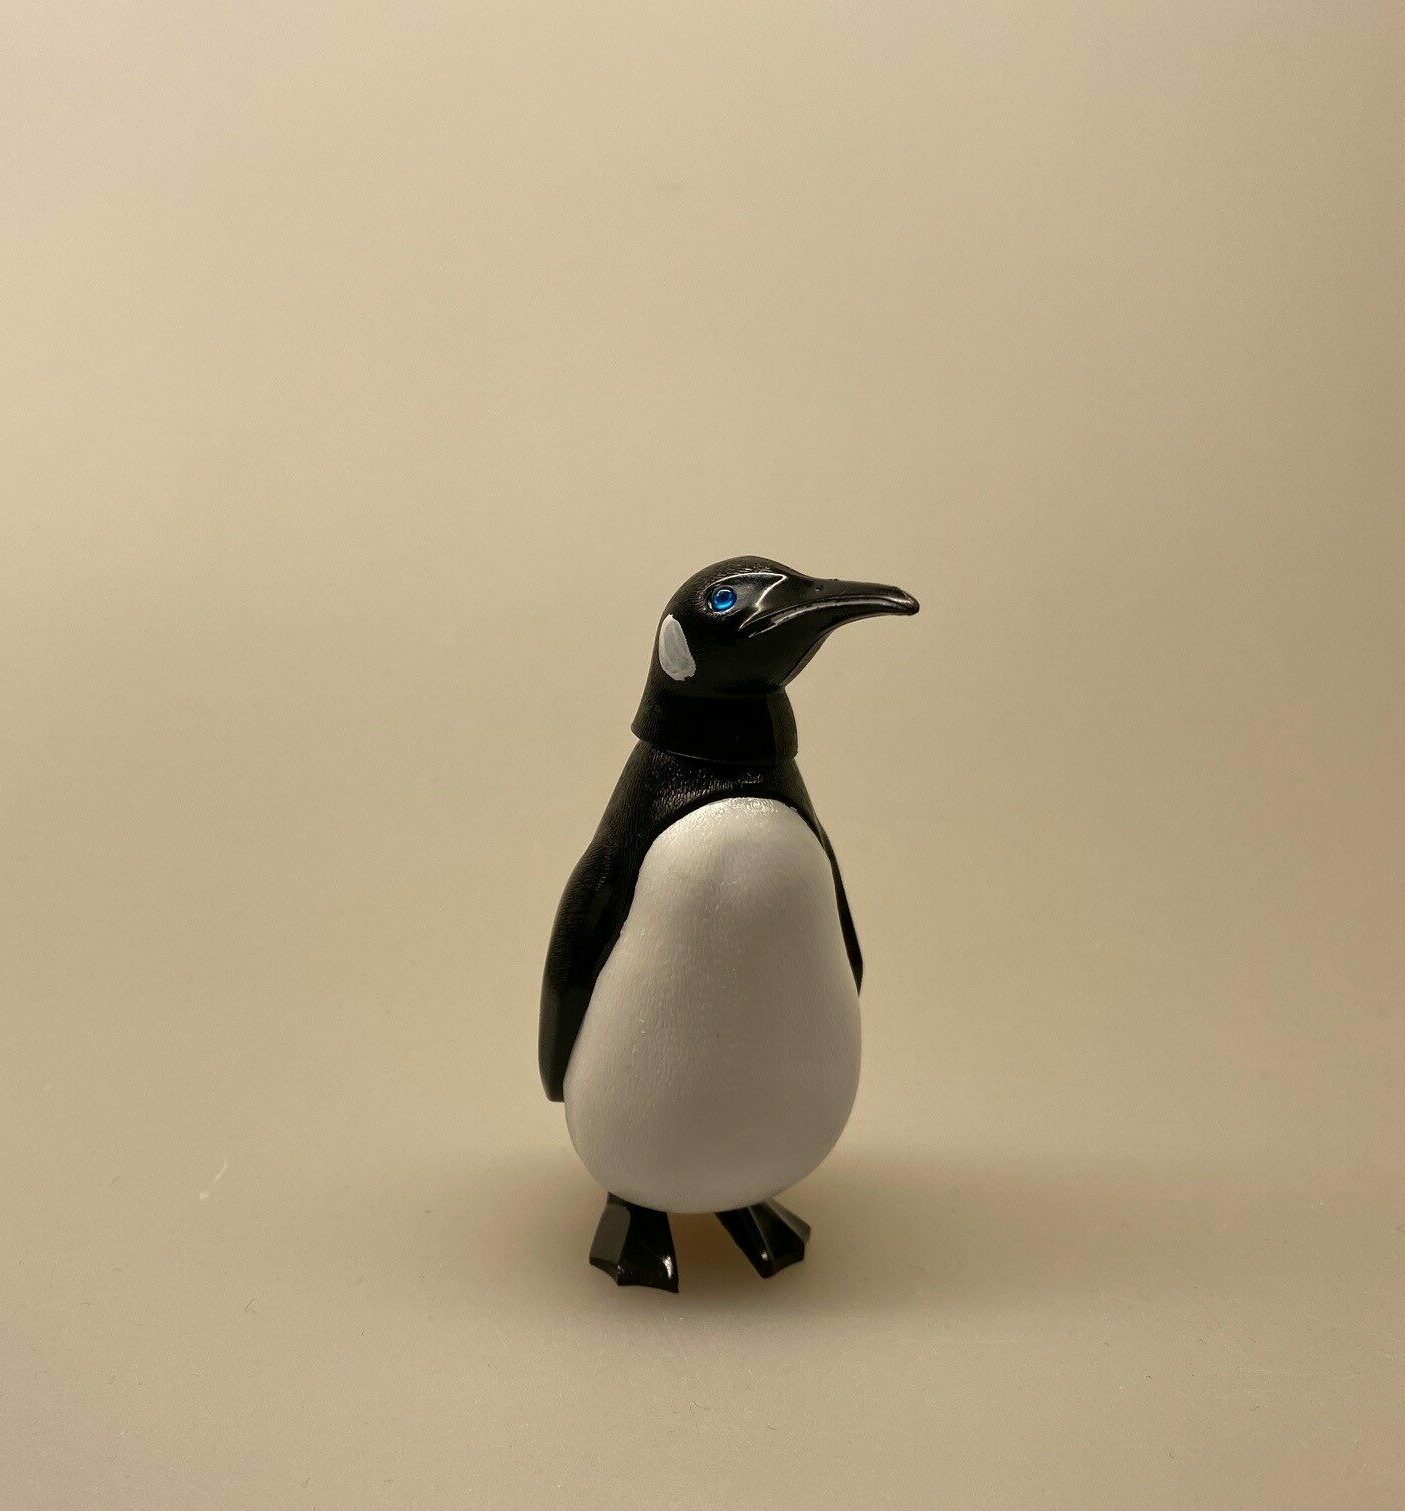 Nikke dyr - Pingvin, pinu, pingo, pingvin, penguin, vippe, nikke, sjov, retro, gammel, reproduceret, tysk, sjov, finurlig, cool, sydpolen, ting med pinviner, pingvinting, biti, ribe